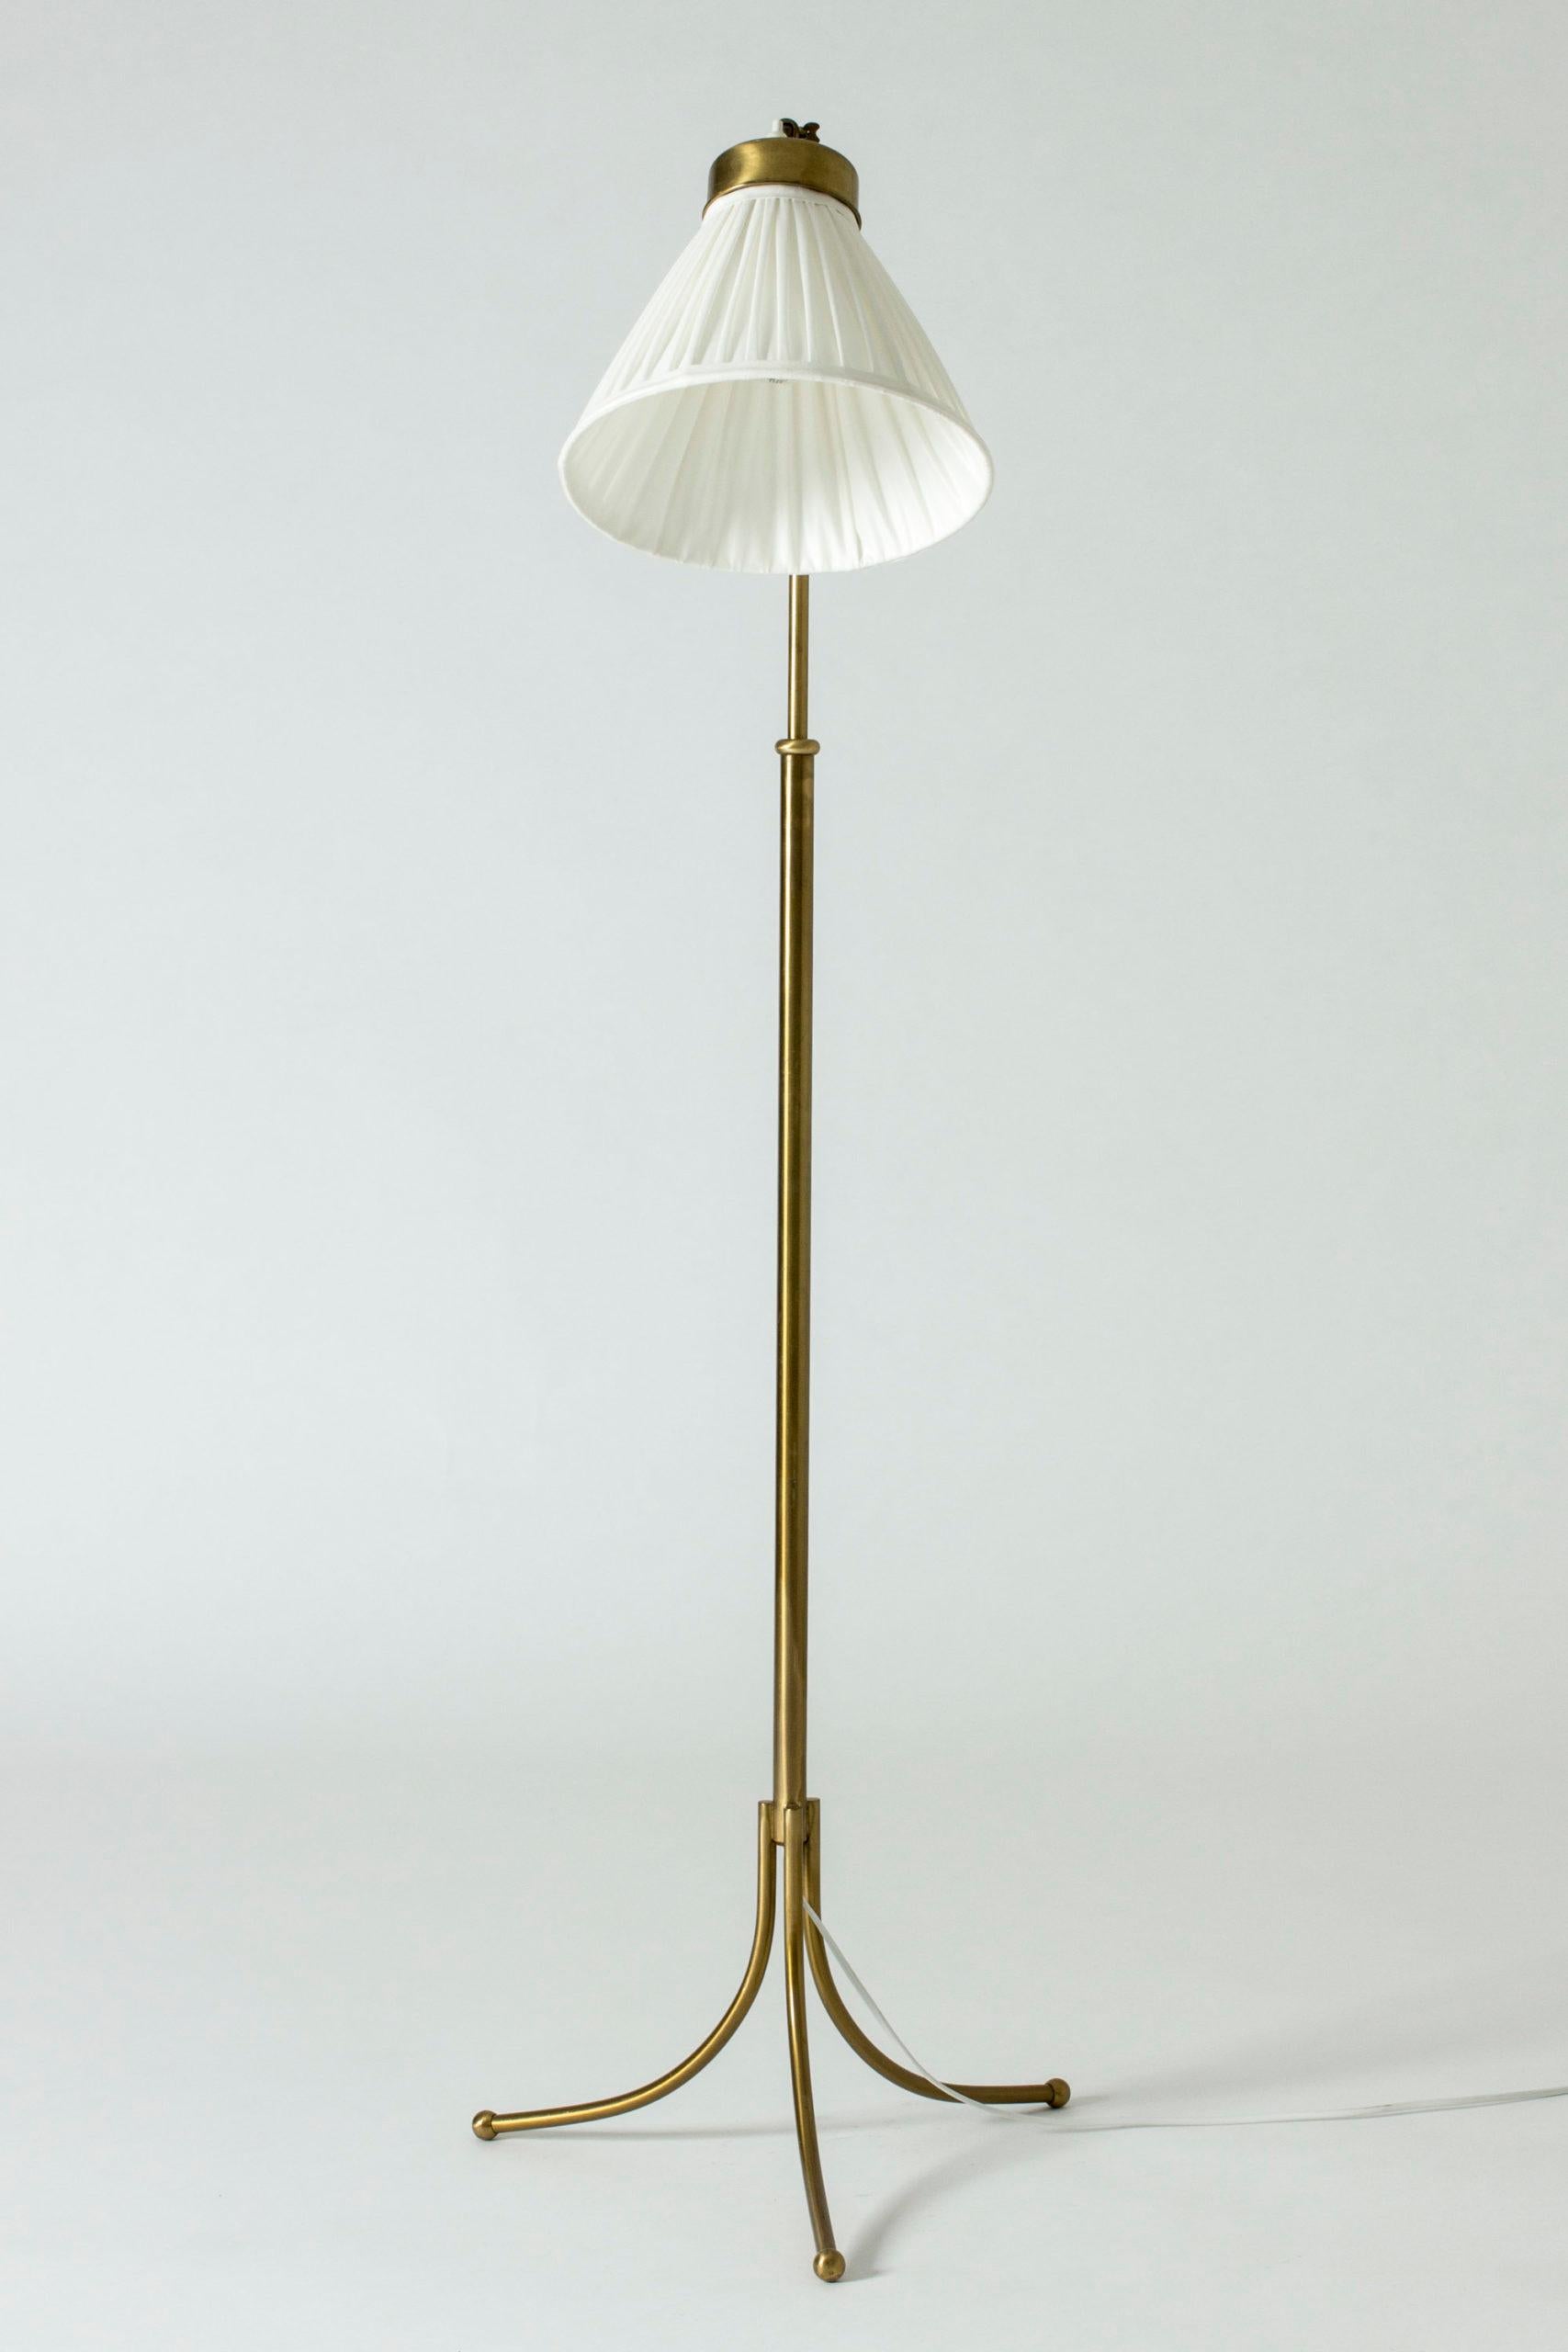 Scandinavian Modern Brass Floor Lamp model #G1842 by Josef Frank for Svenskt Tenn, Sweden, 1950s